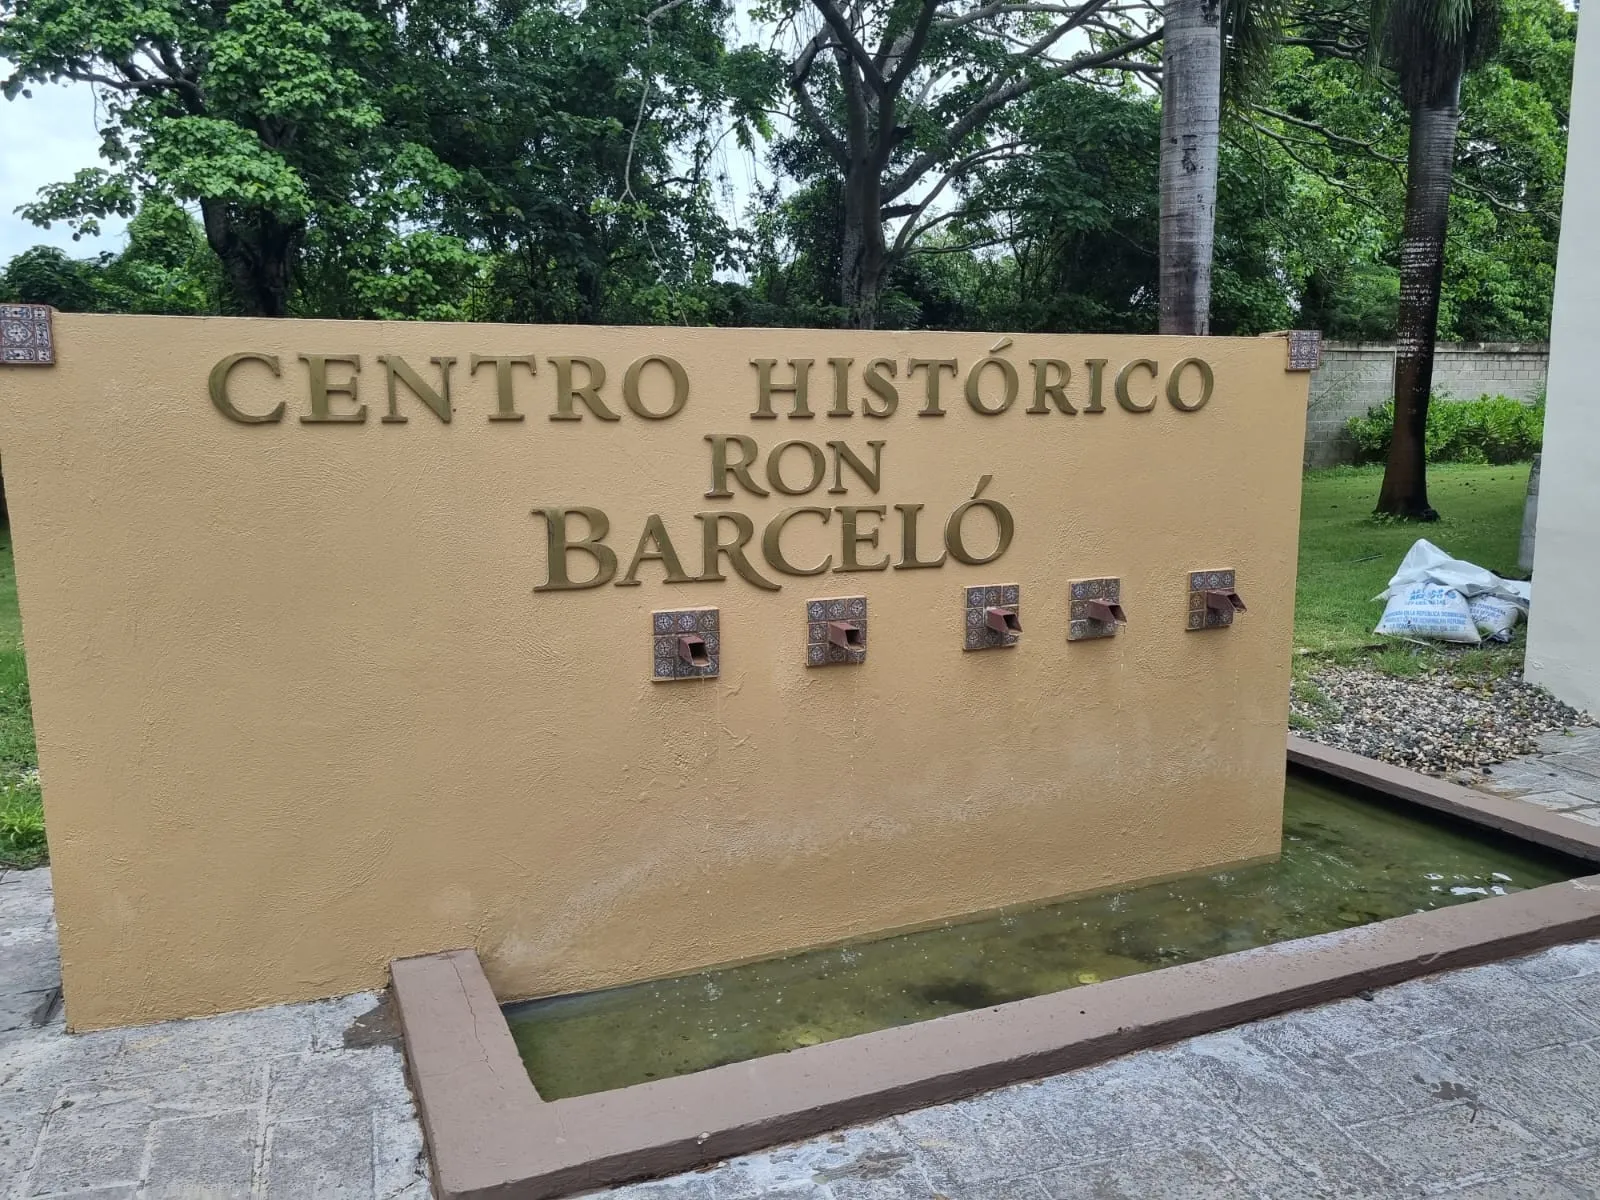 Ron Barceló presenta en su centro histórico la cultura dominicana ronera